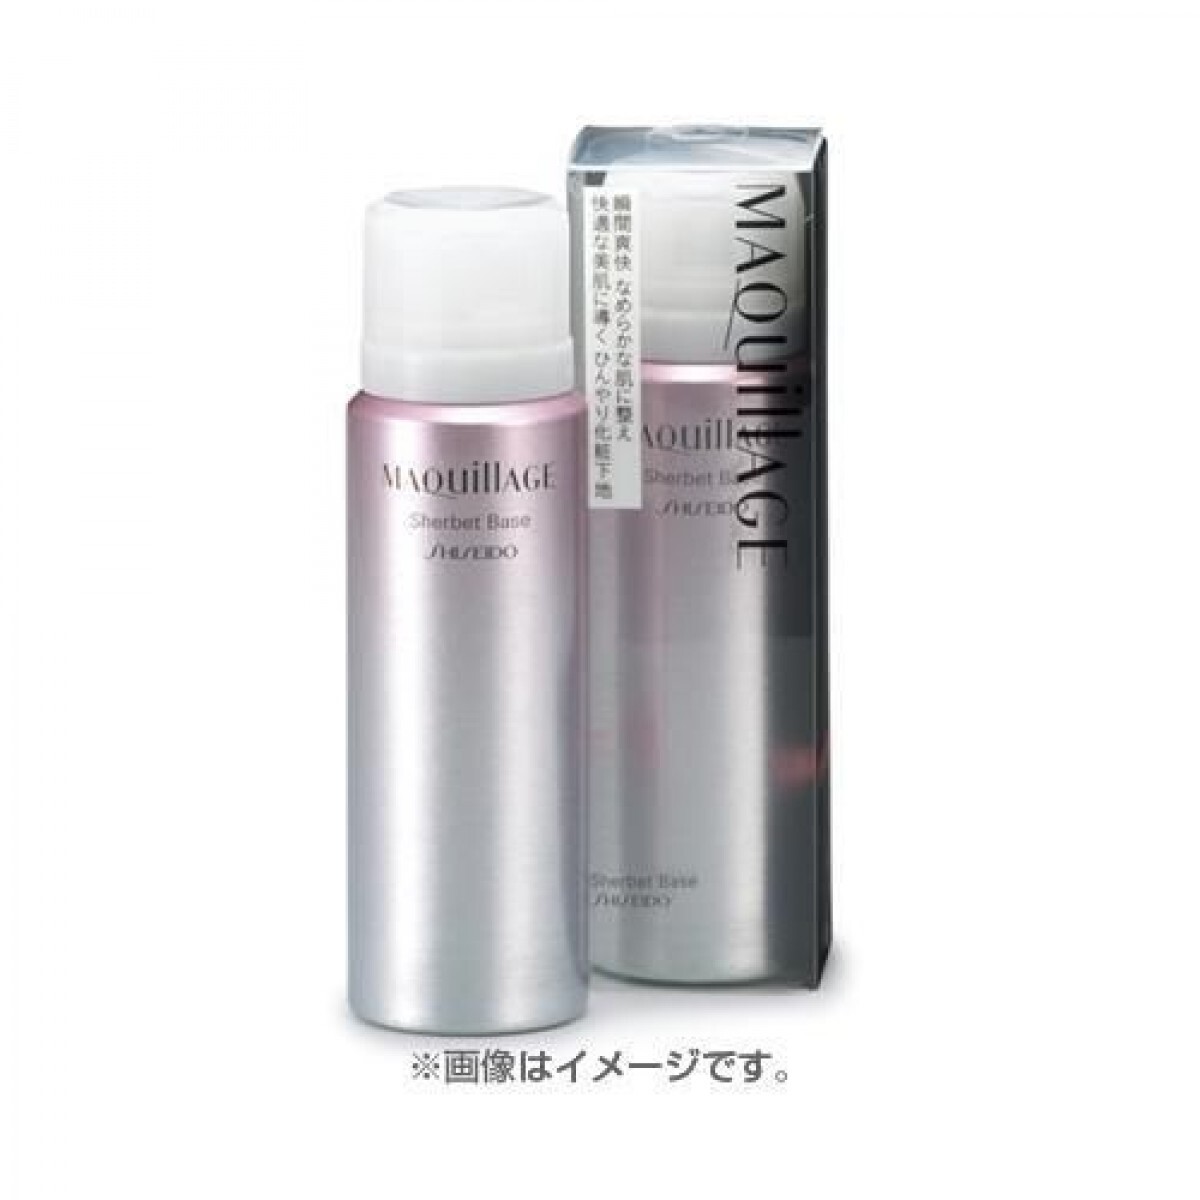 Kem lót dạng xịt Shiseido Maquillage sherbet base Nhật